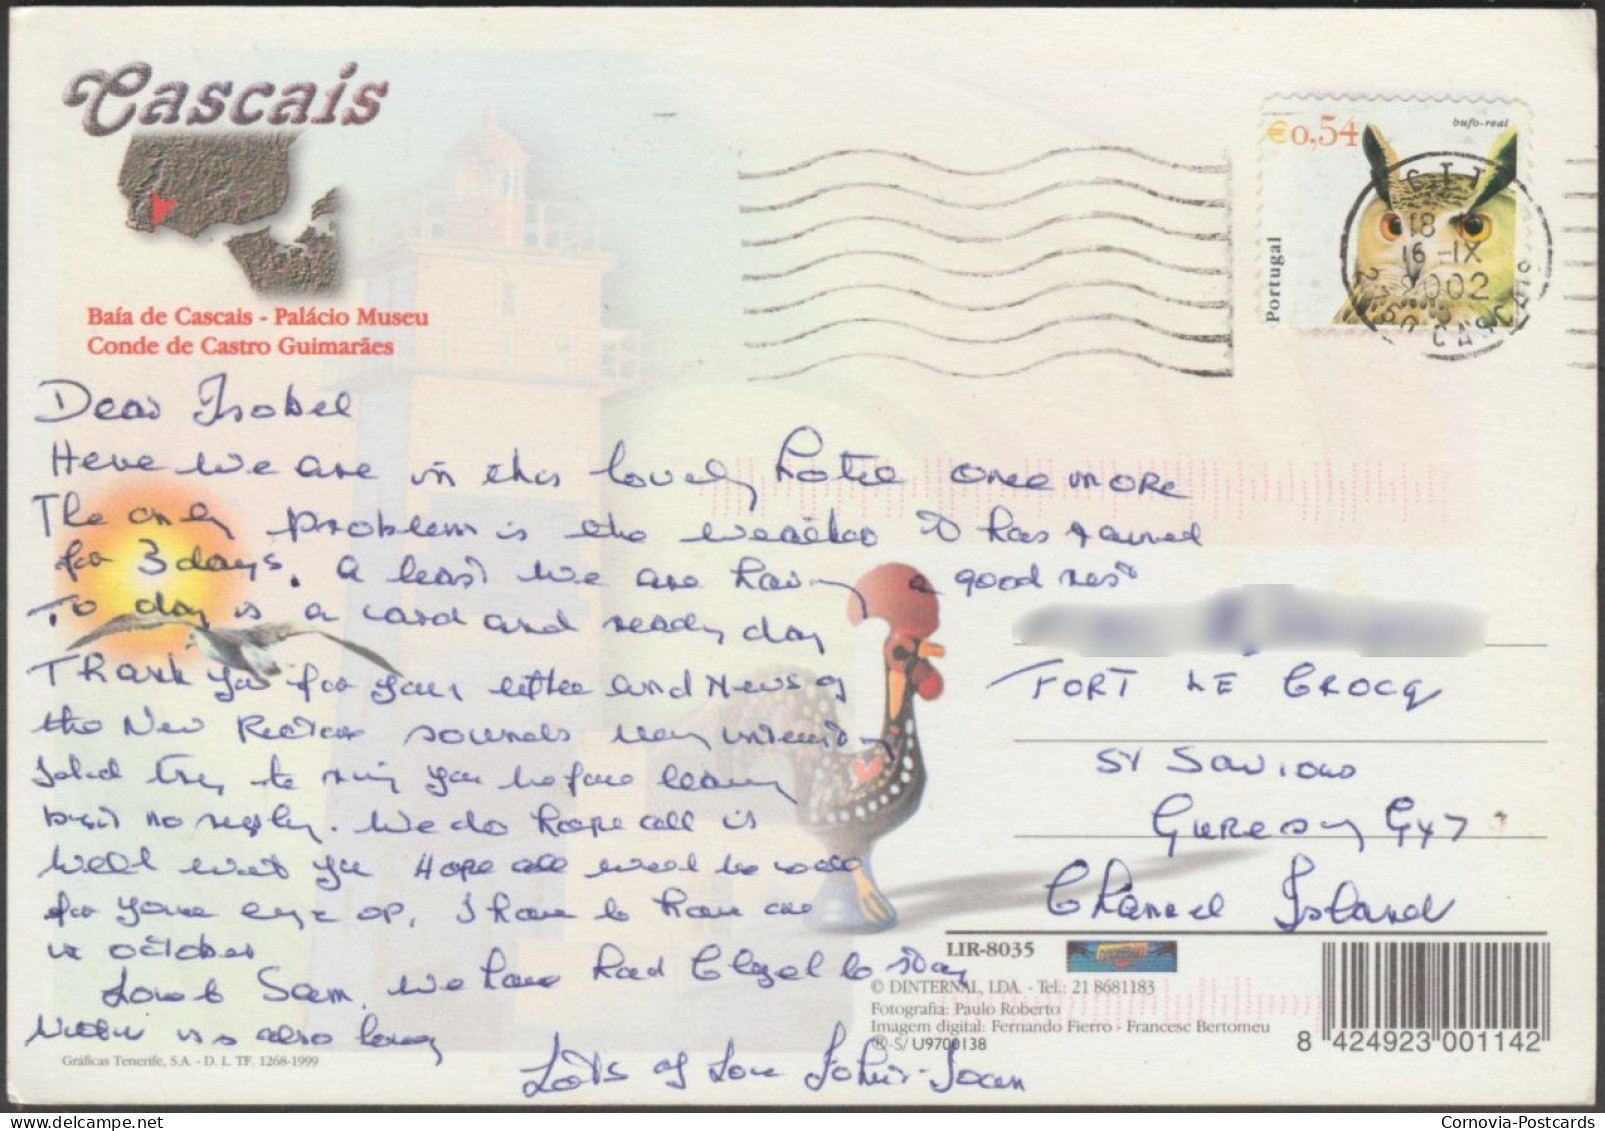 Cascais, 2002 - Dinternal Bilhete Postal - Lisboa